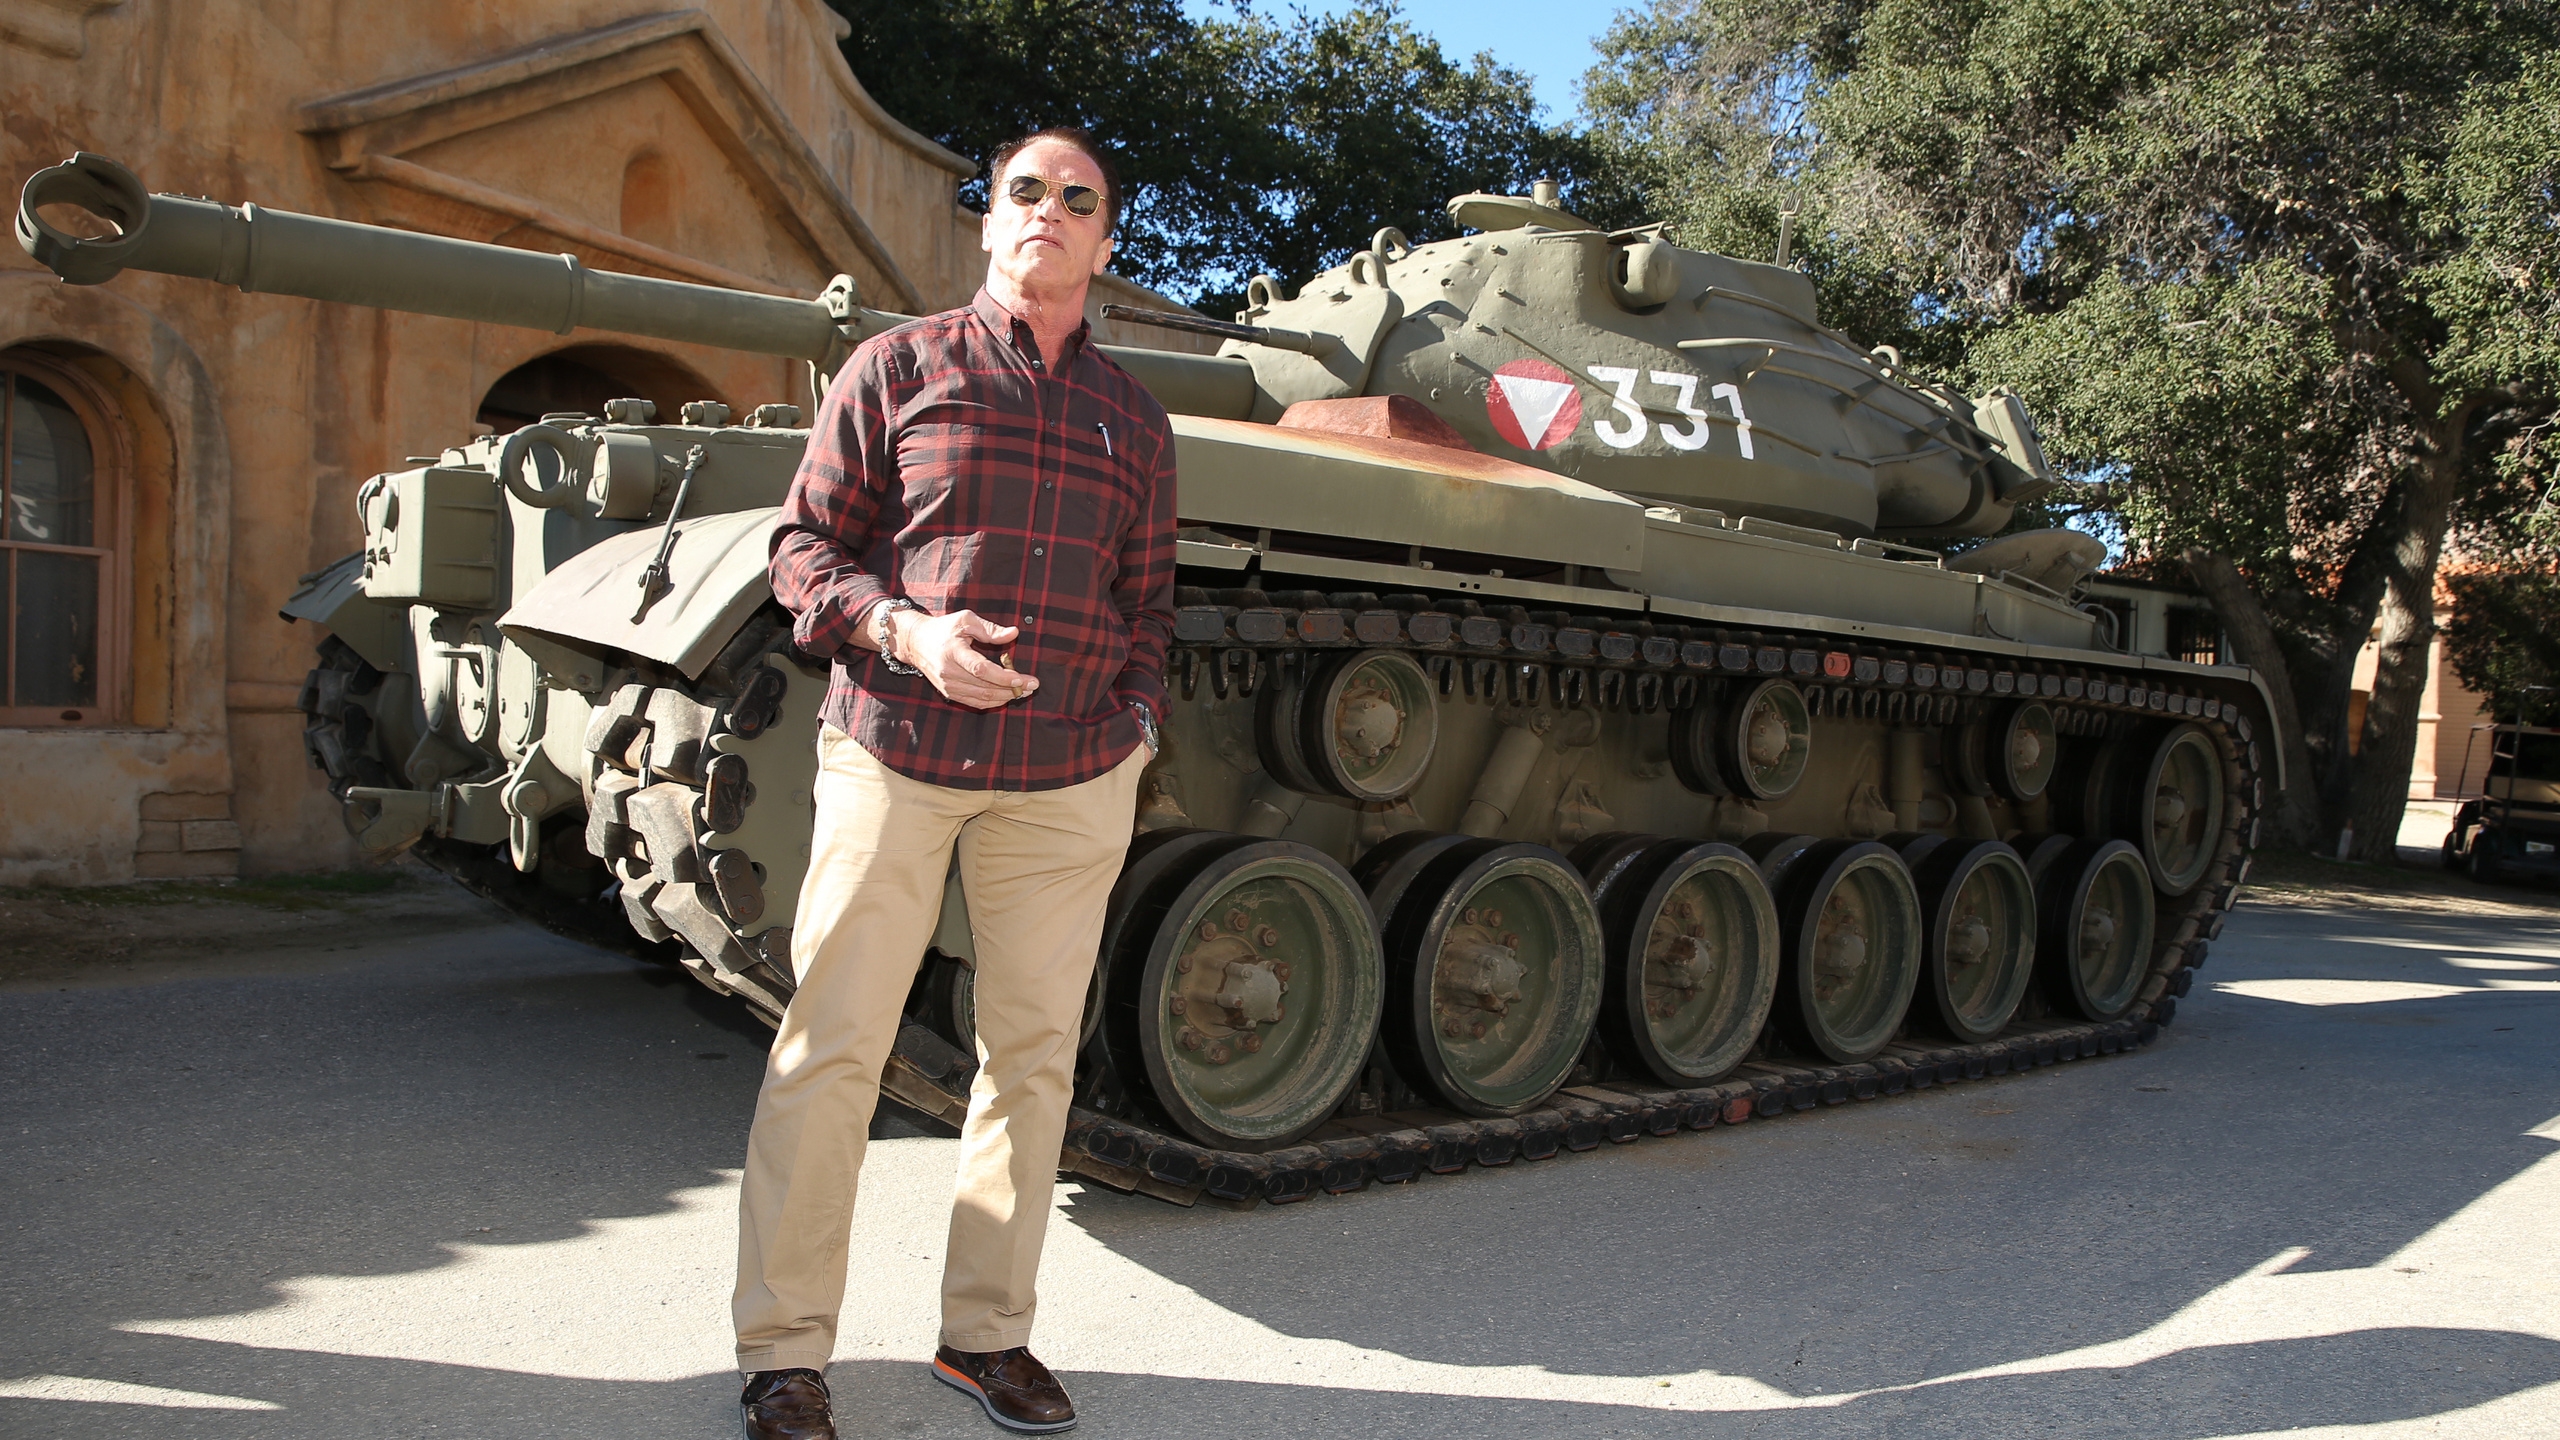 Arnold Schwarzenegger Tank for 2560x1440 HDTV resolution